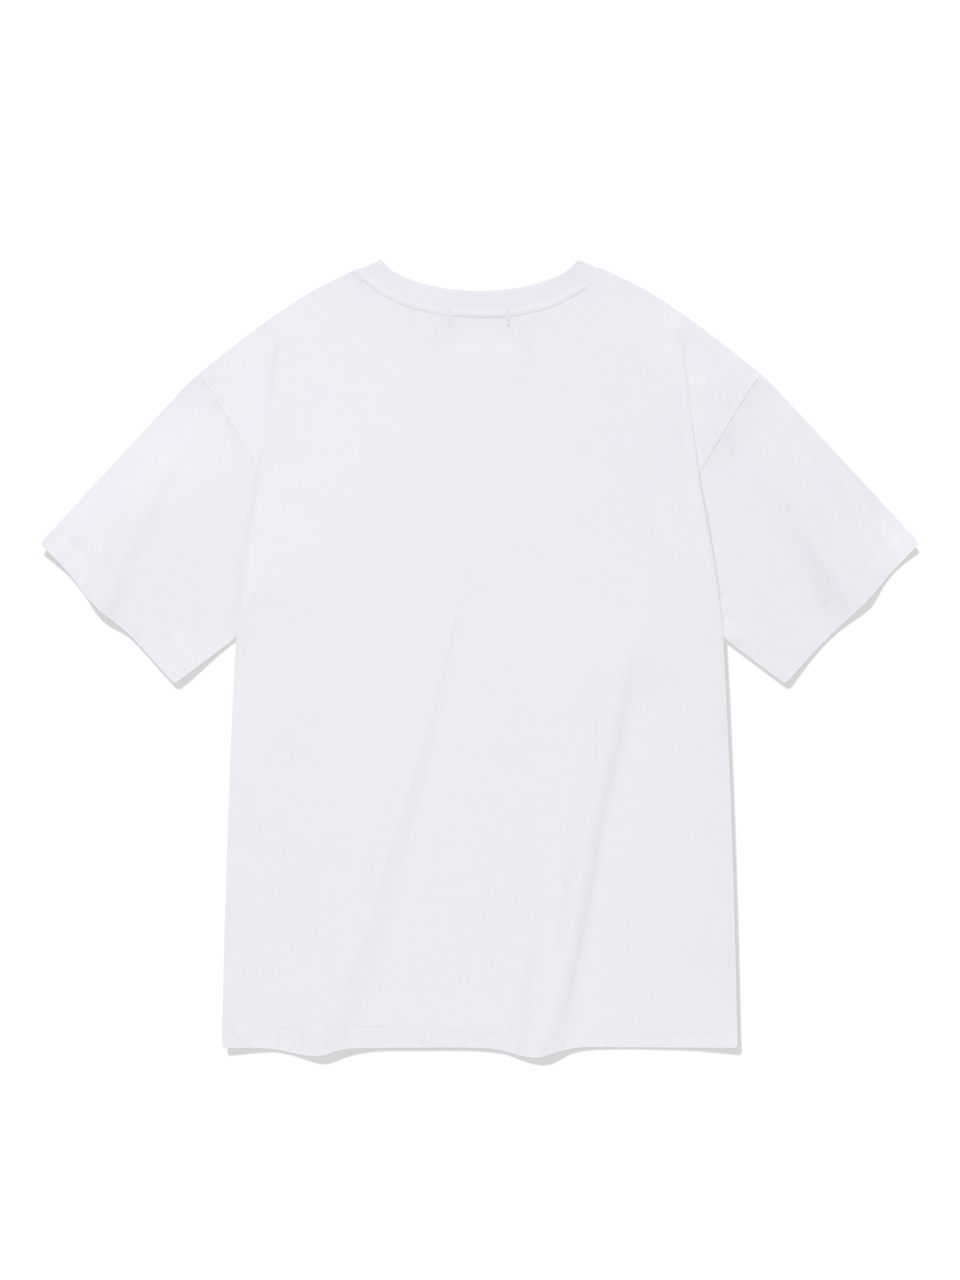 SP 하트 로고 엠블럼 브이넥 티셔츠-화이트